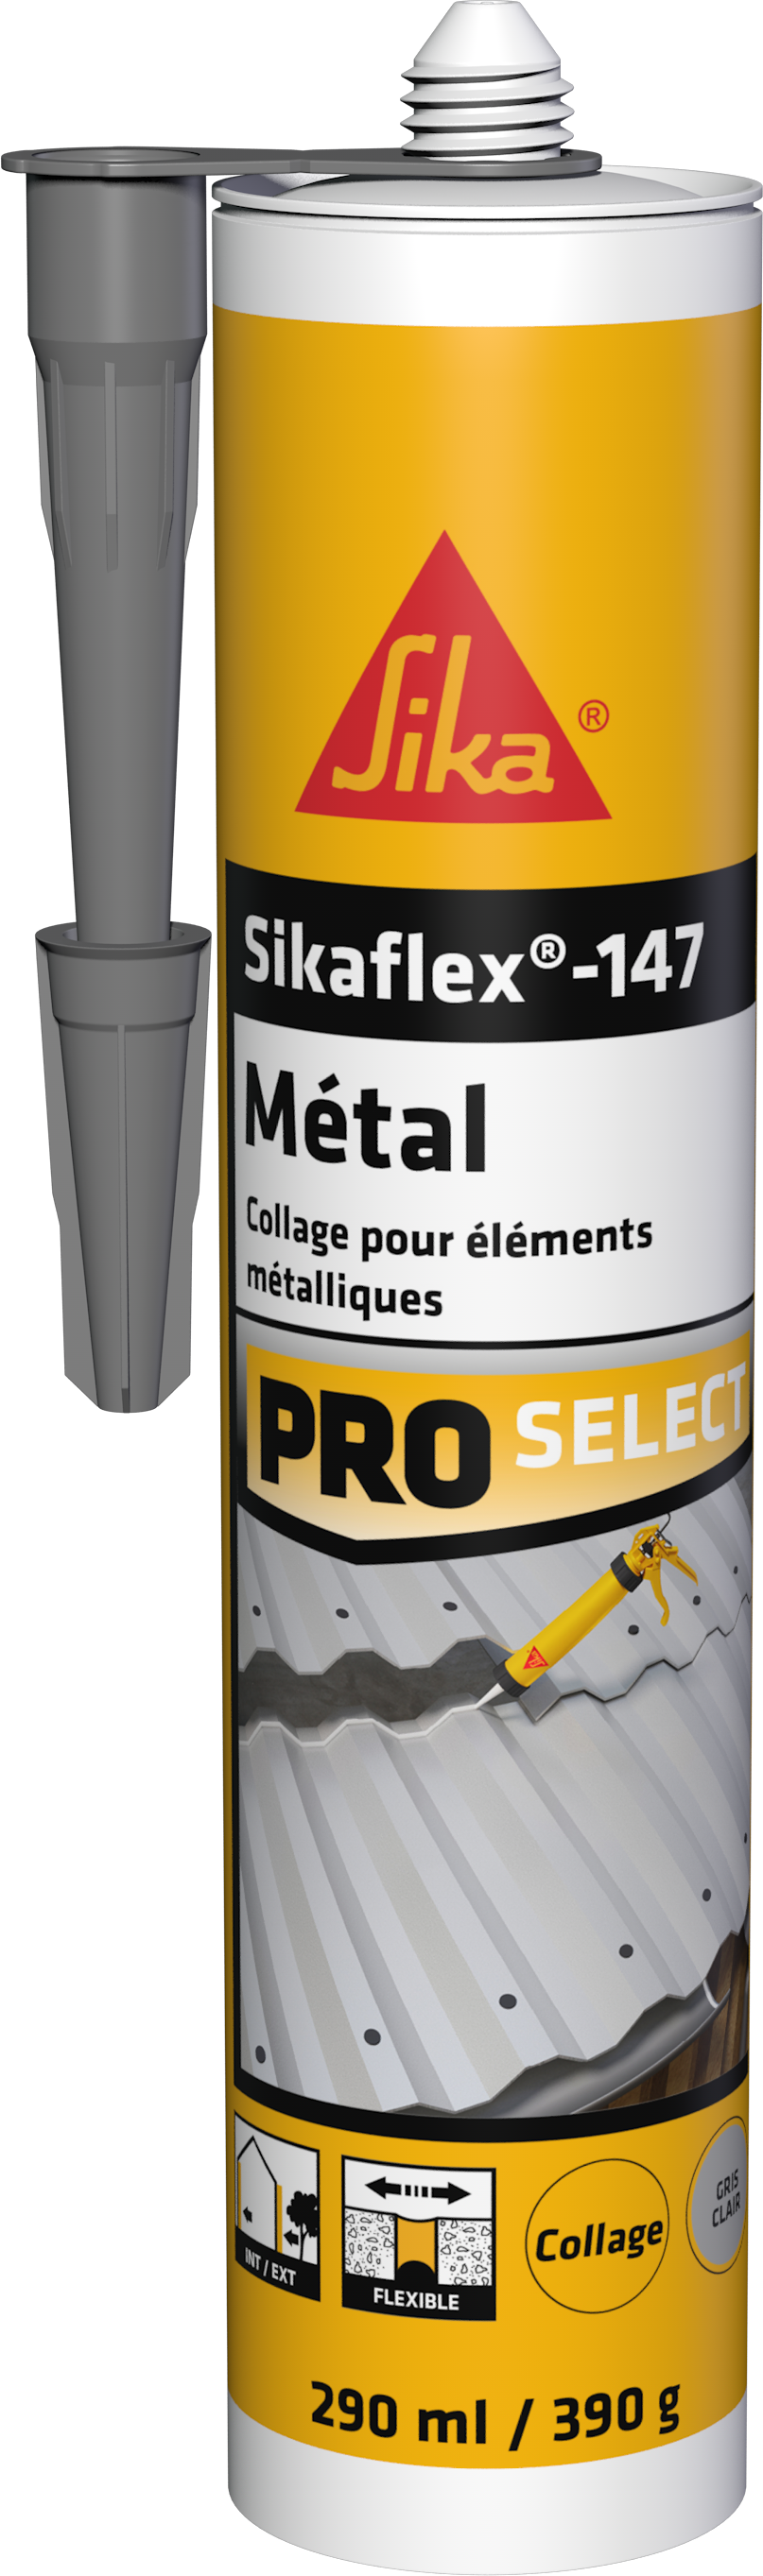 Collage éléments métalliques Sikaflex-147 - SIKA